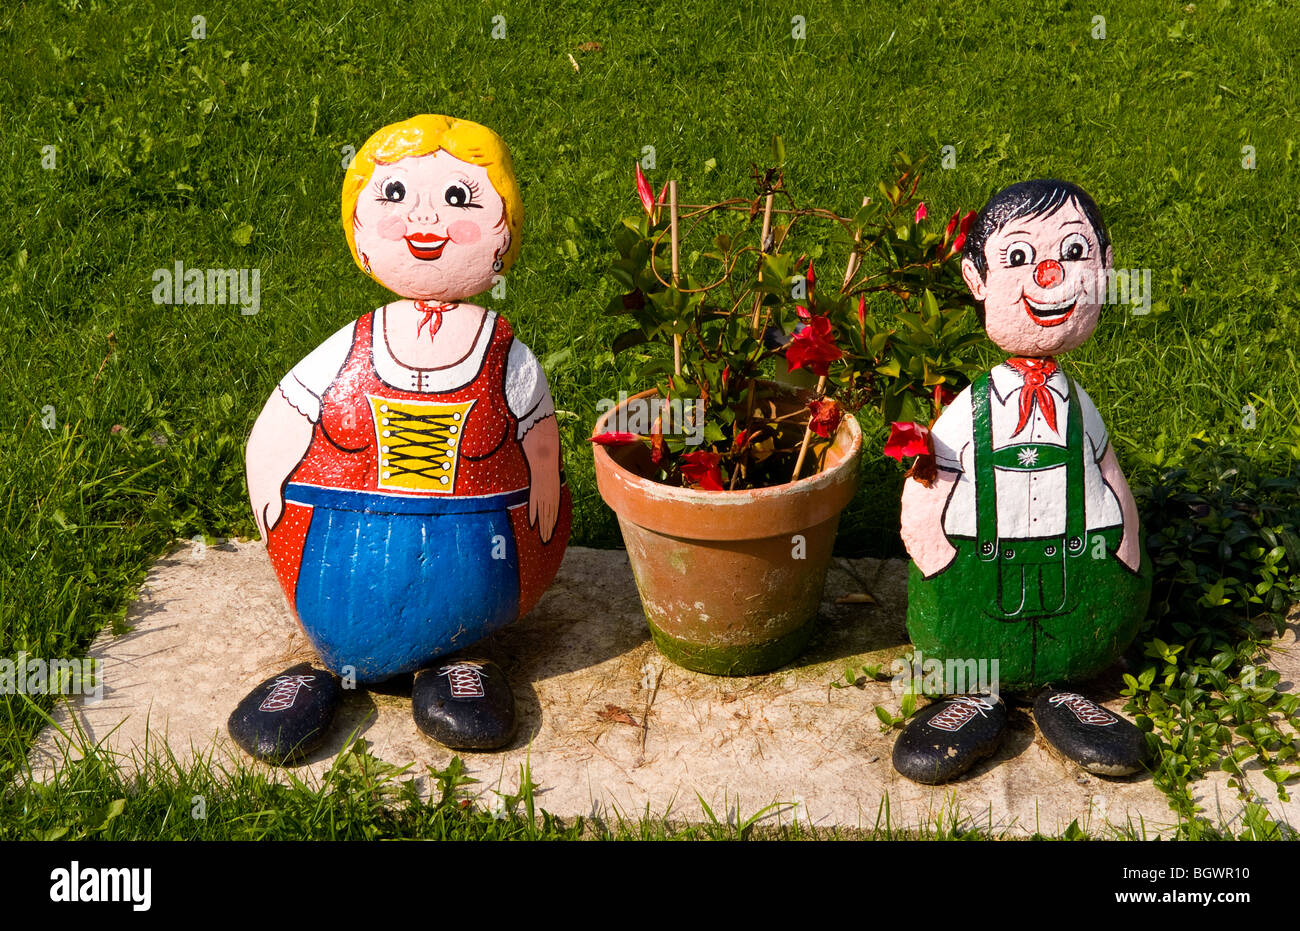 Alpine statues in home in rural town of Murau Austria Stock Photo